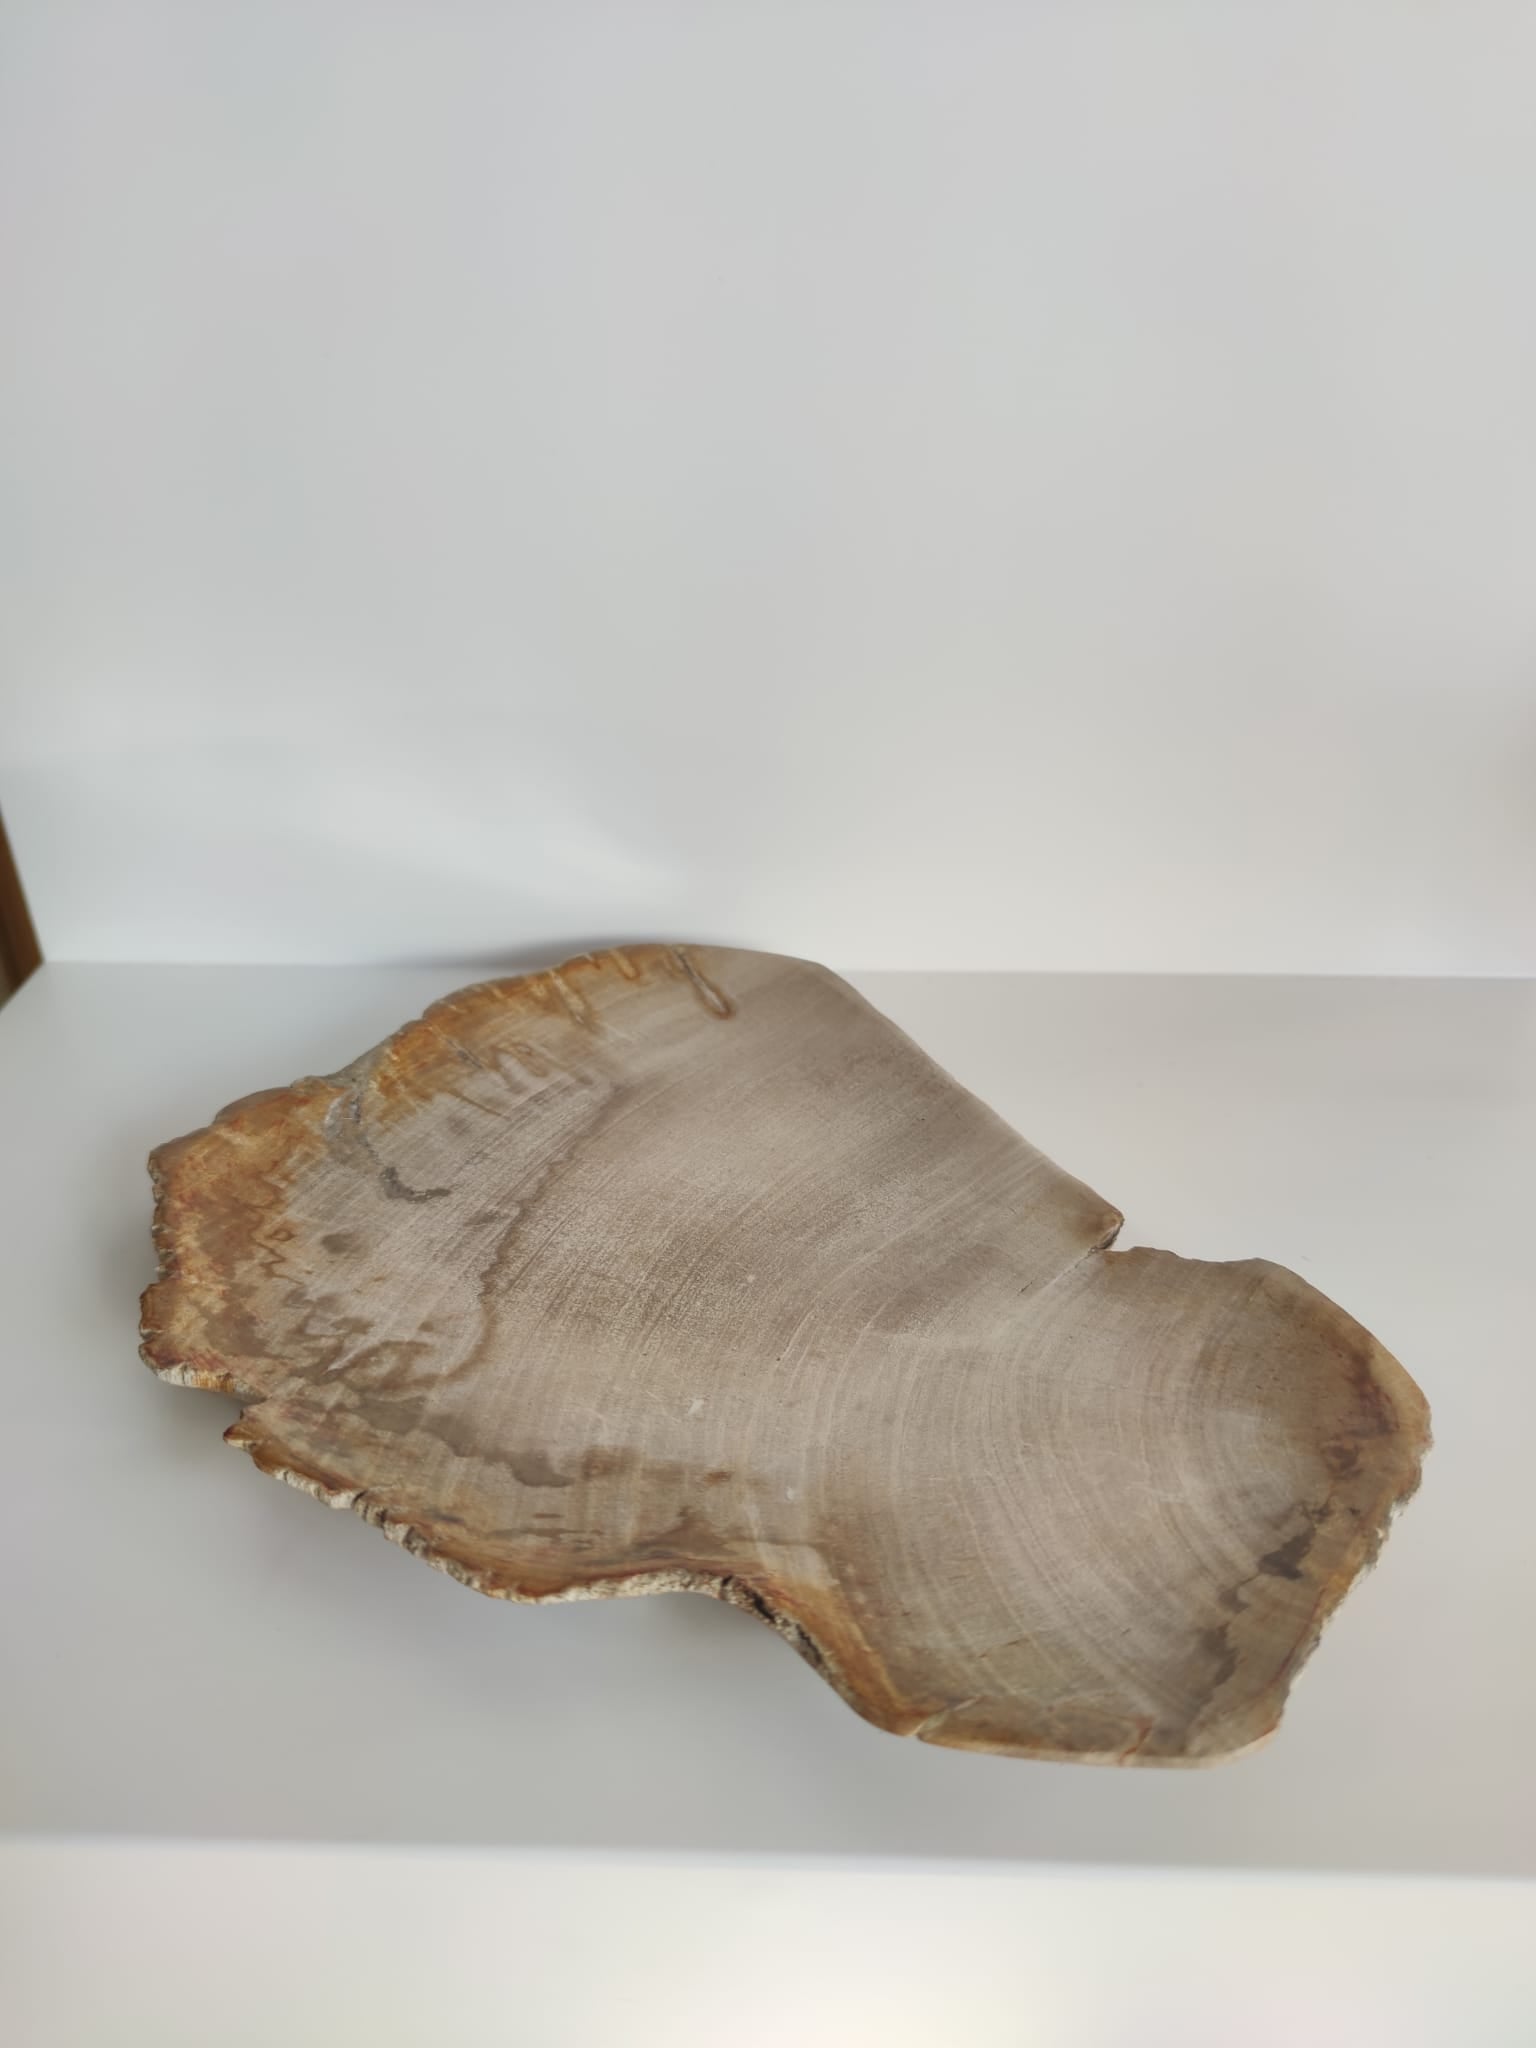 Grand vide poche ou plat en bois pétrifié - 30cm